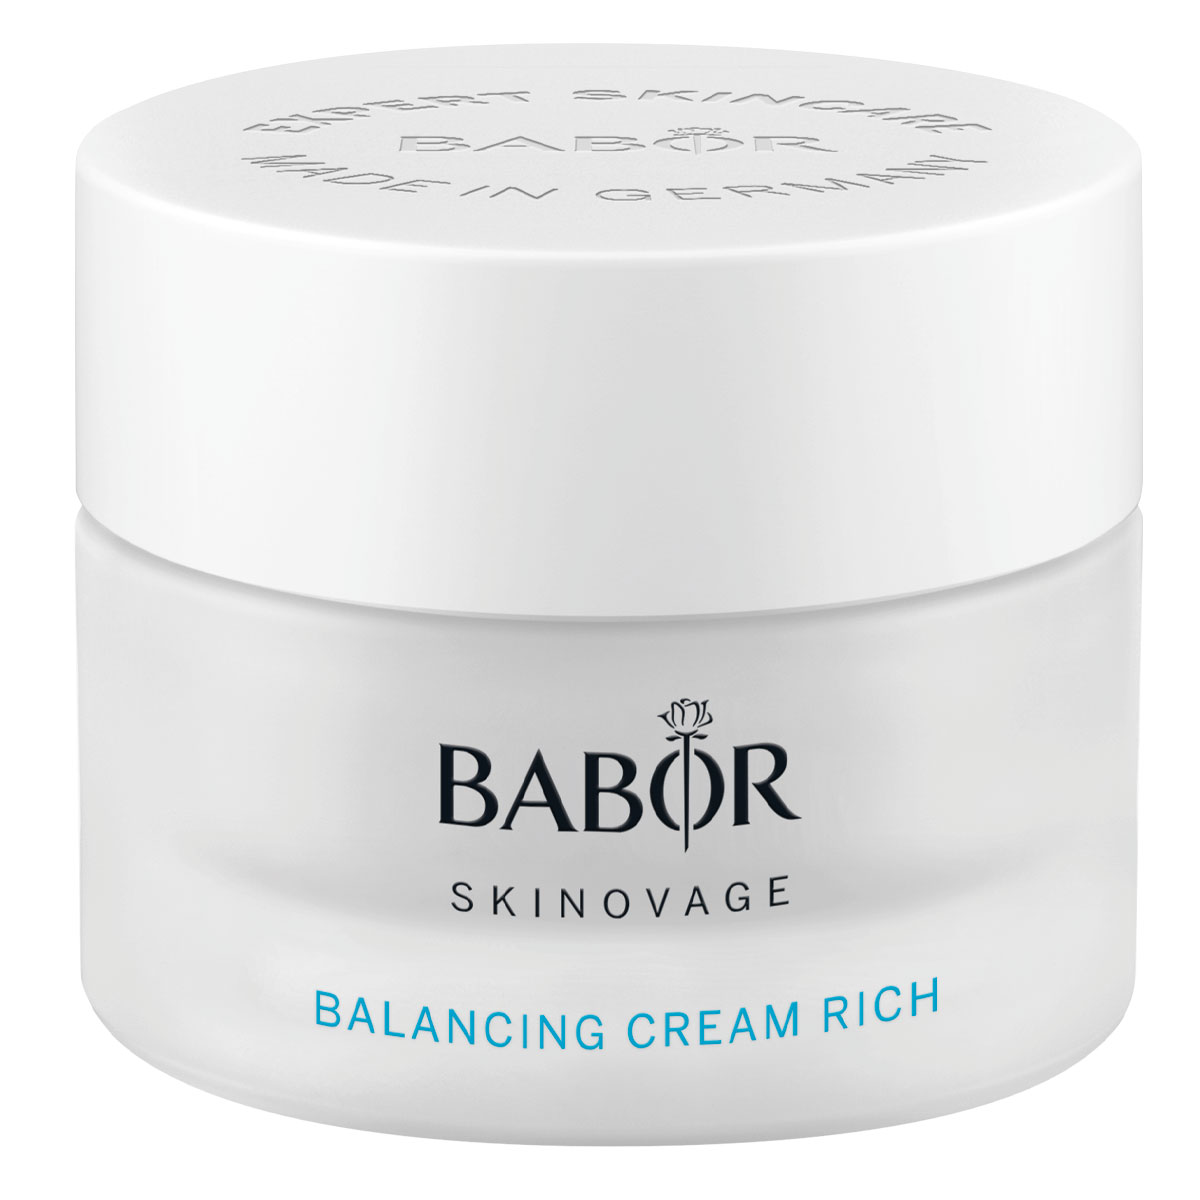 Крем Рич для Комбинированной Кожи SKINOVAGE/Skinovage Balancing Cream Rich BABOR